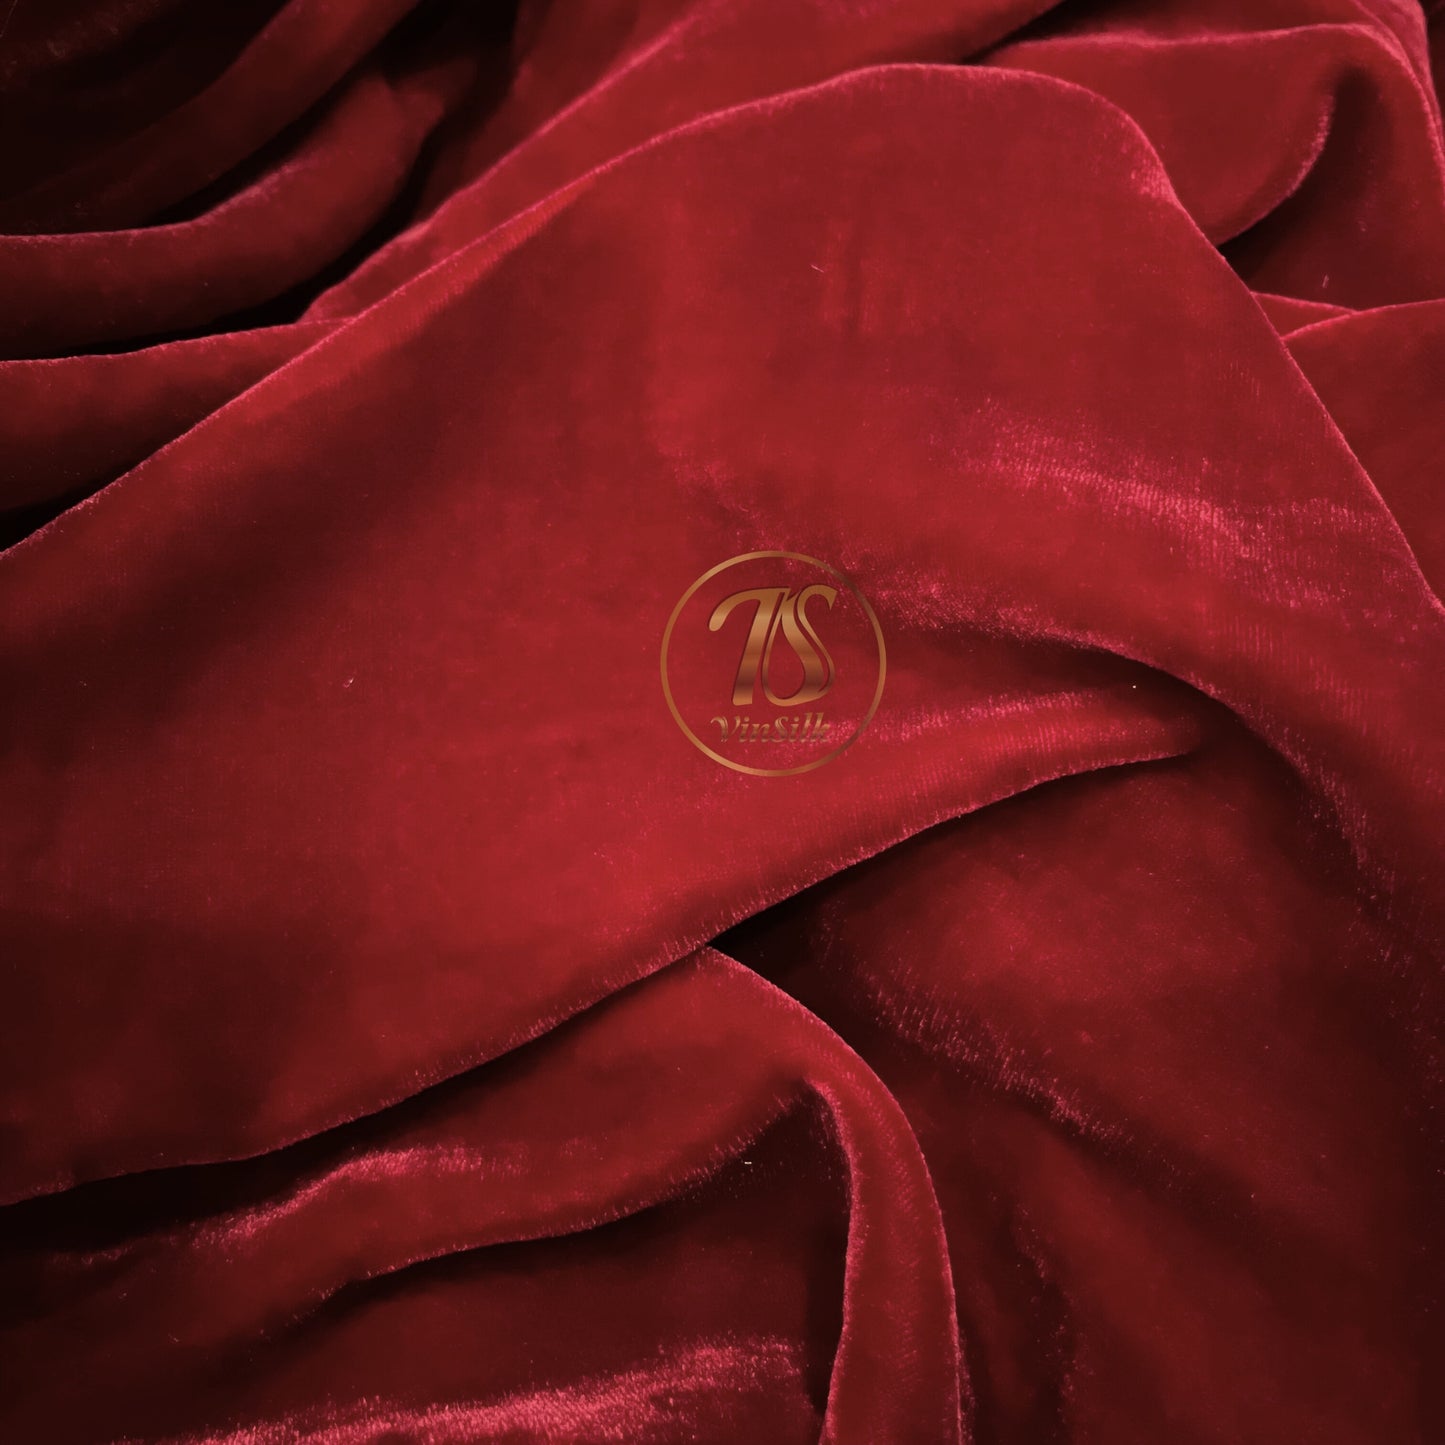 100% Mulberry silk velvet - Red Silk Velvet - Silk for sewing - Dress making